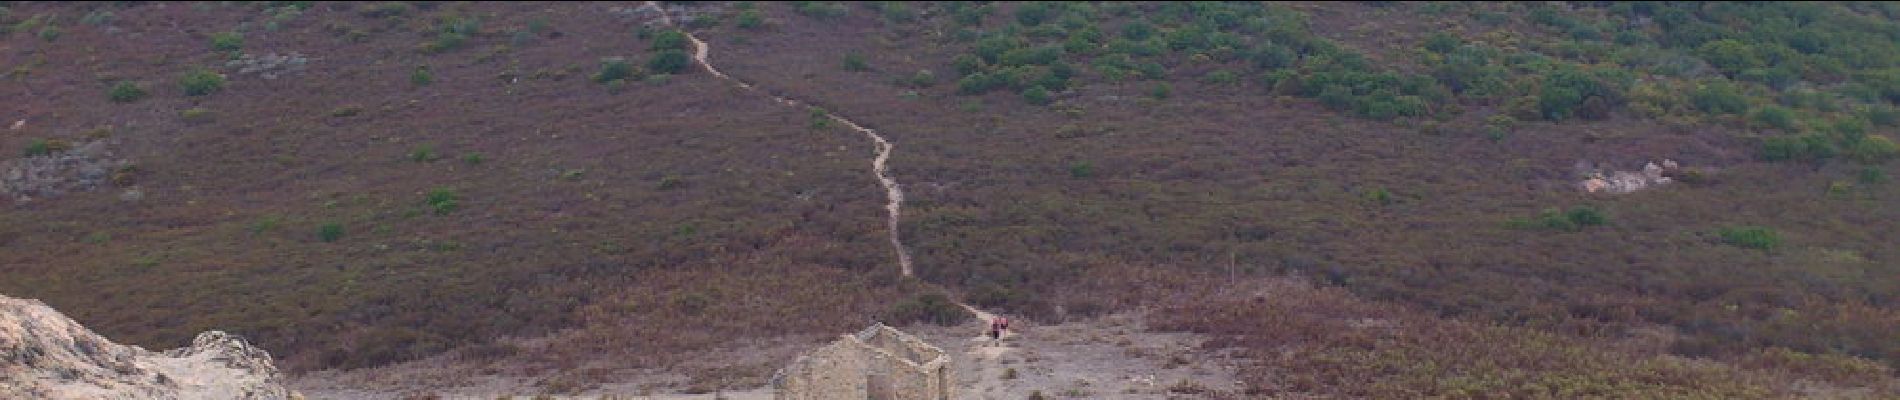 POI Appietto - 16 - Redecendons du Rocher des Gozzi pour grimper en face sur la Punta Pastinaca (814 m) - Photo